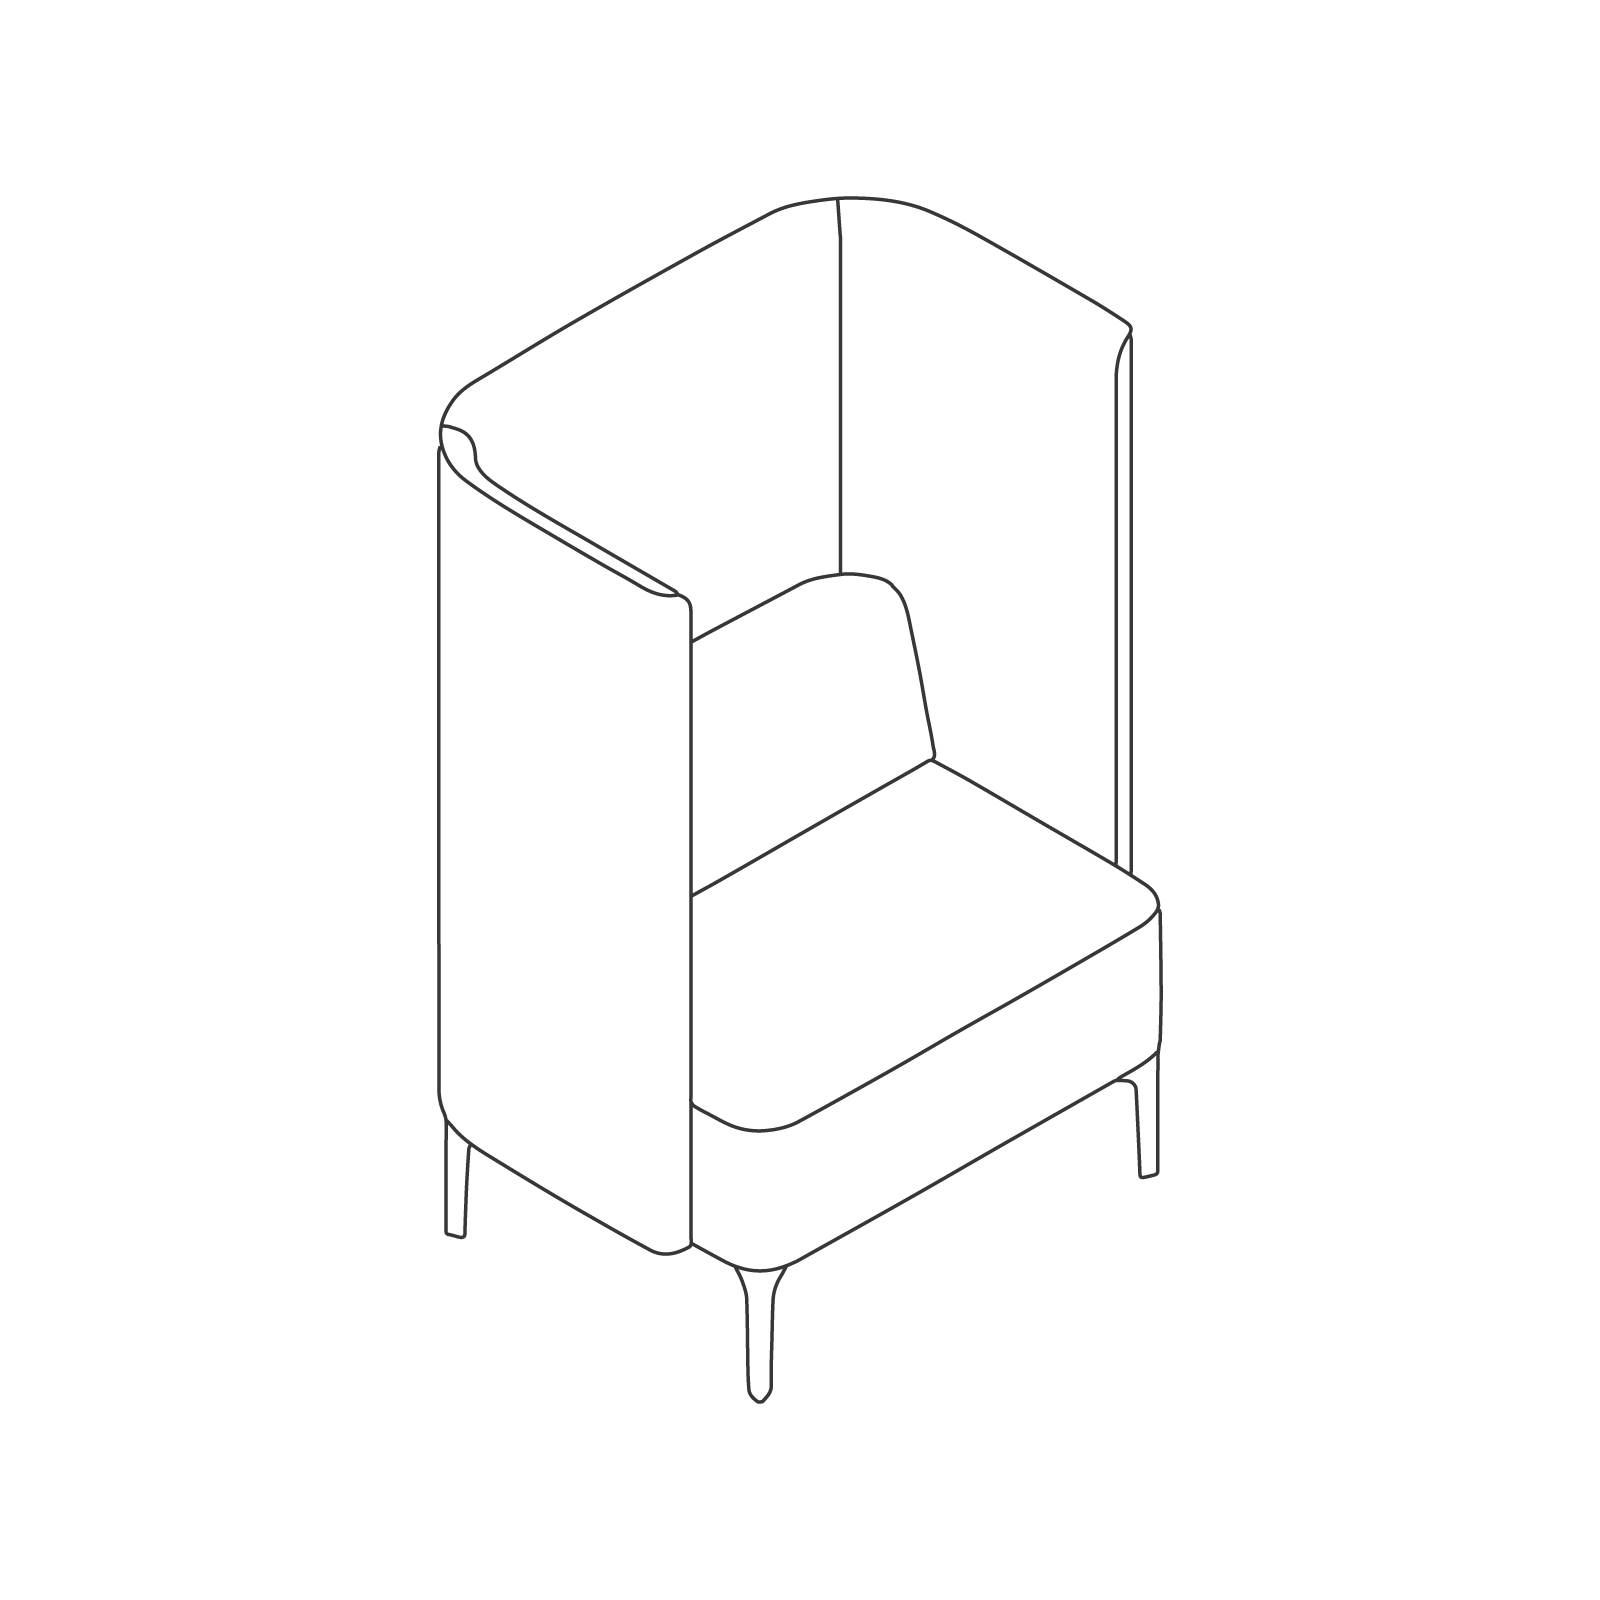 线描图 - Pullman座椅–4腿底座